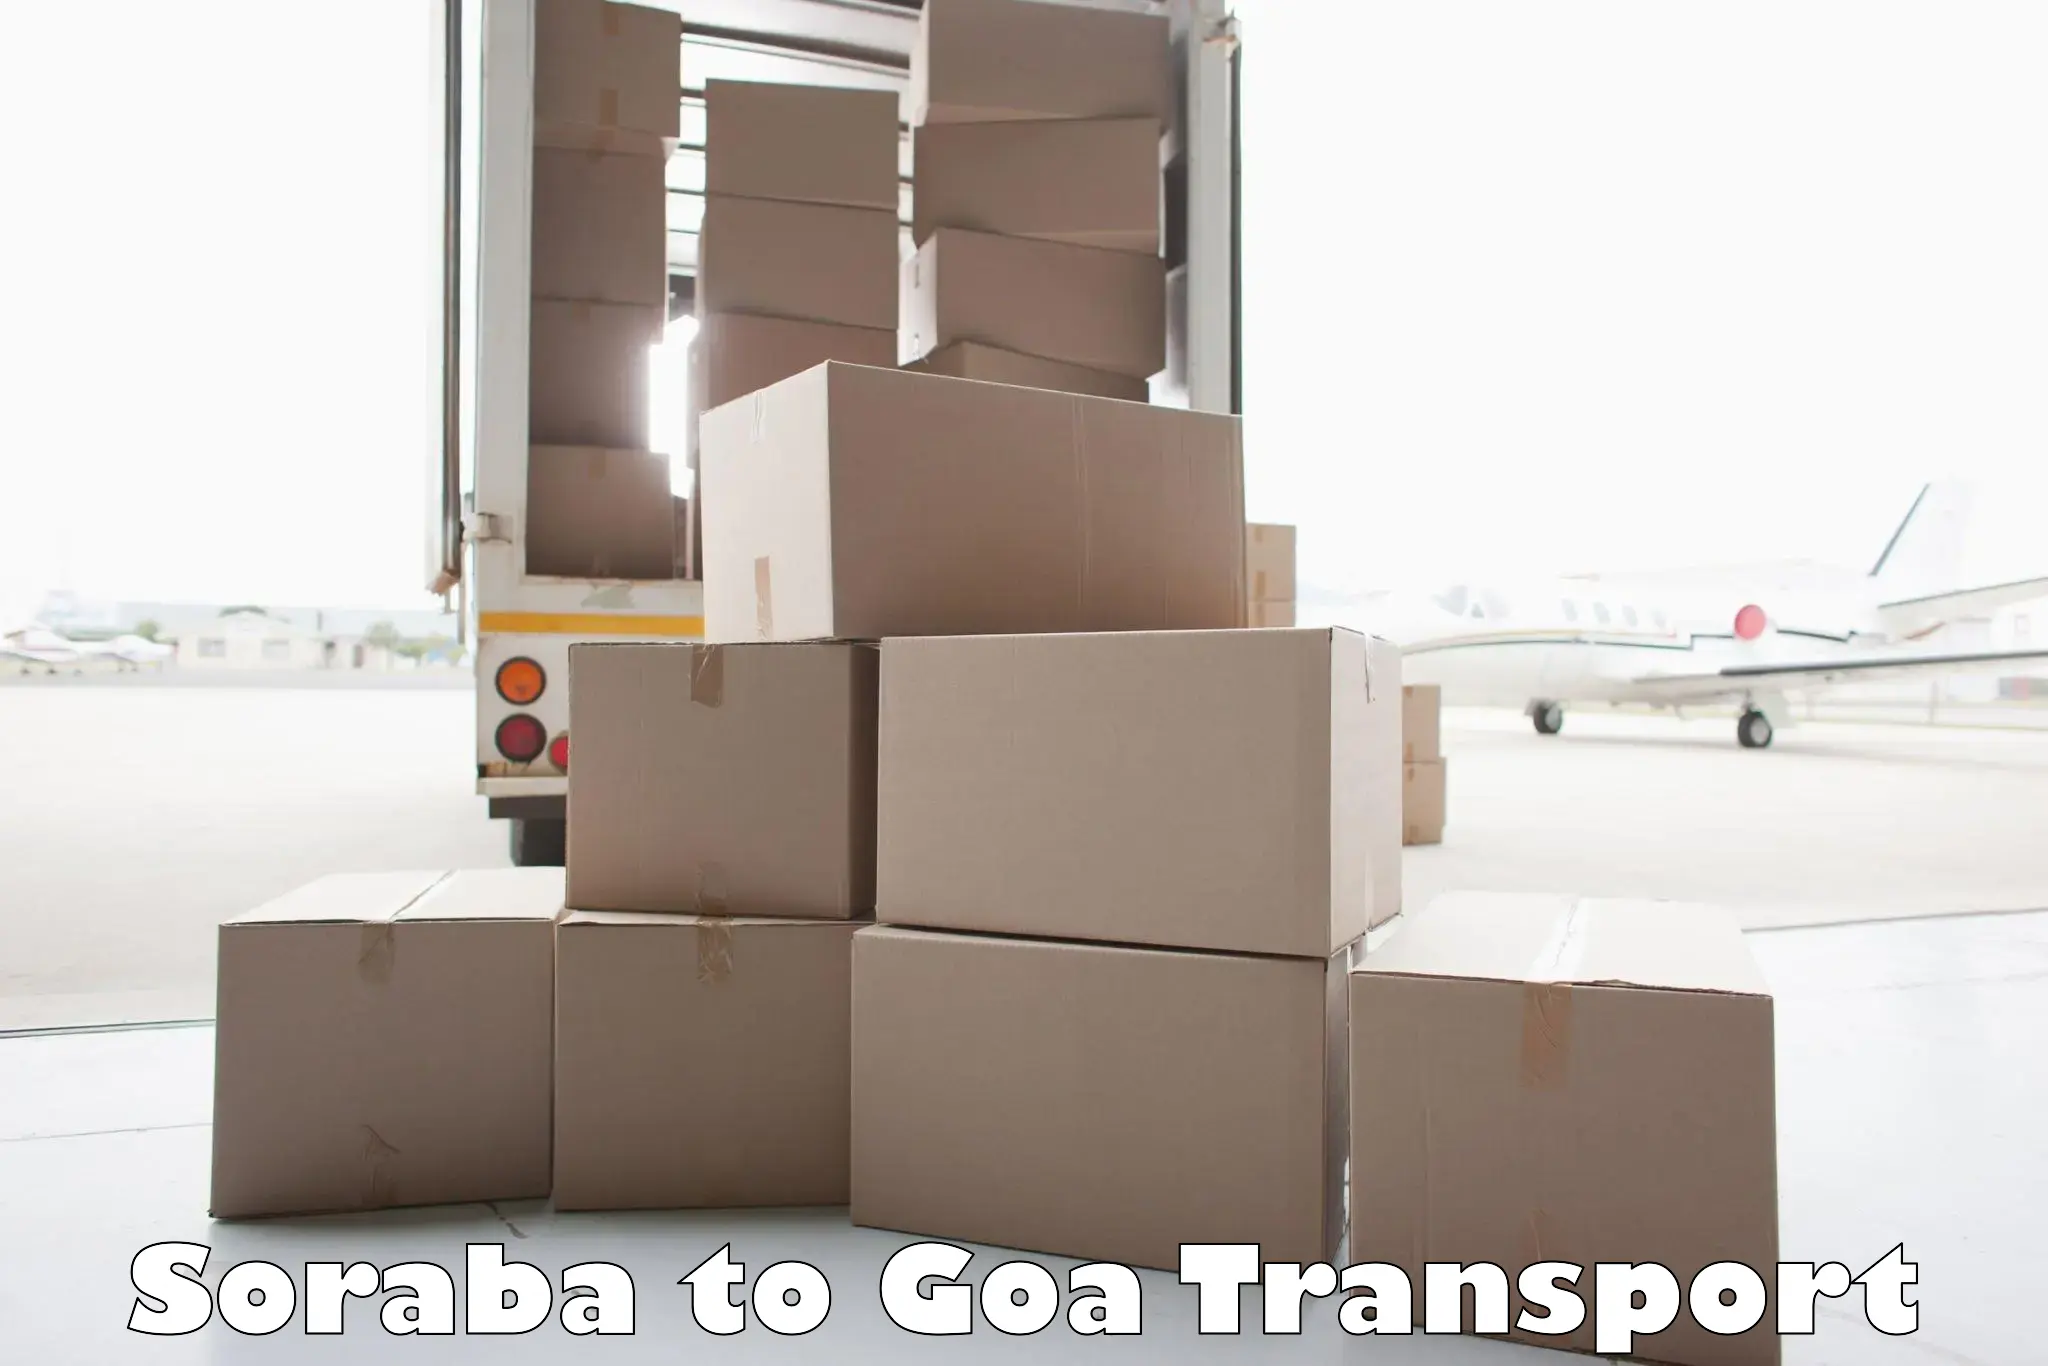 Intercity transport Soraba to IIT Goa